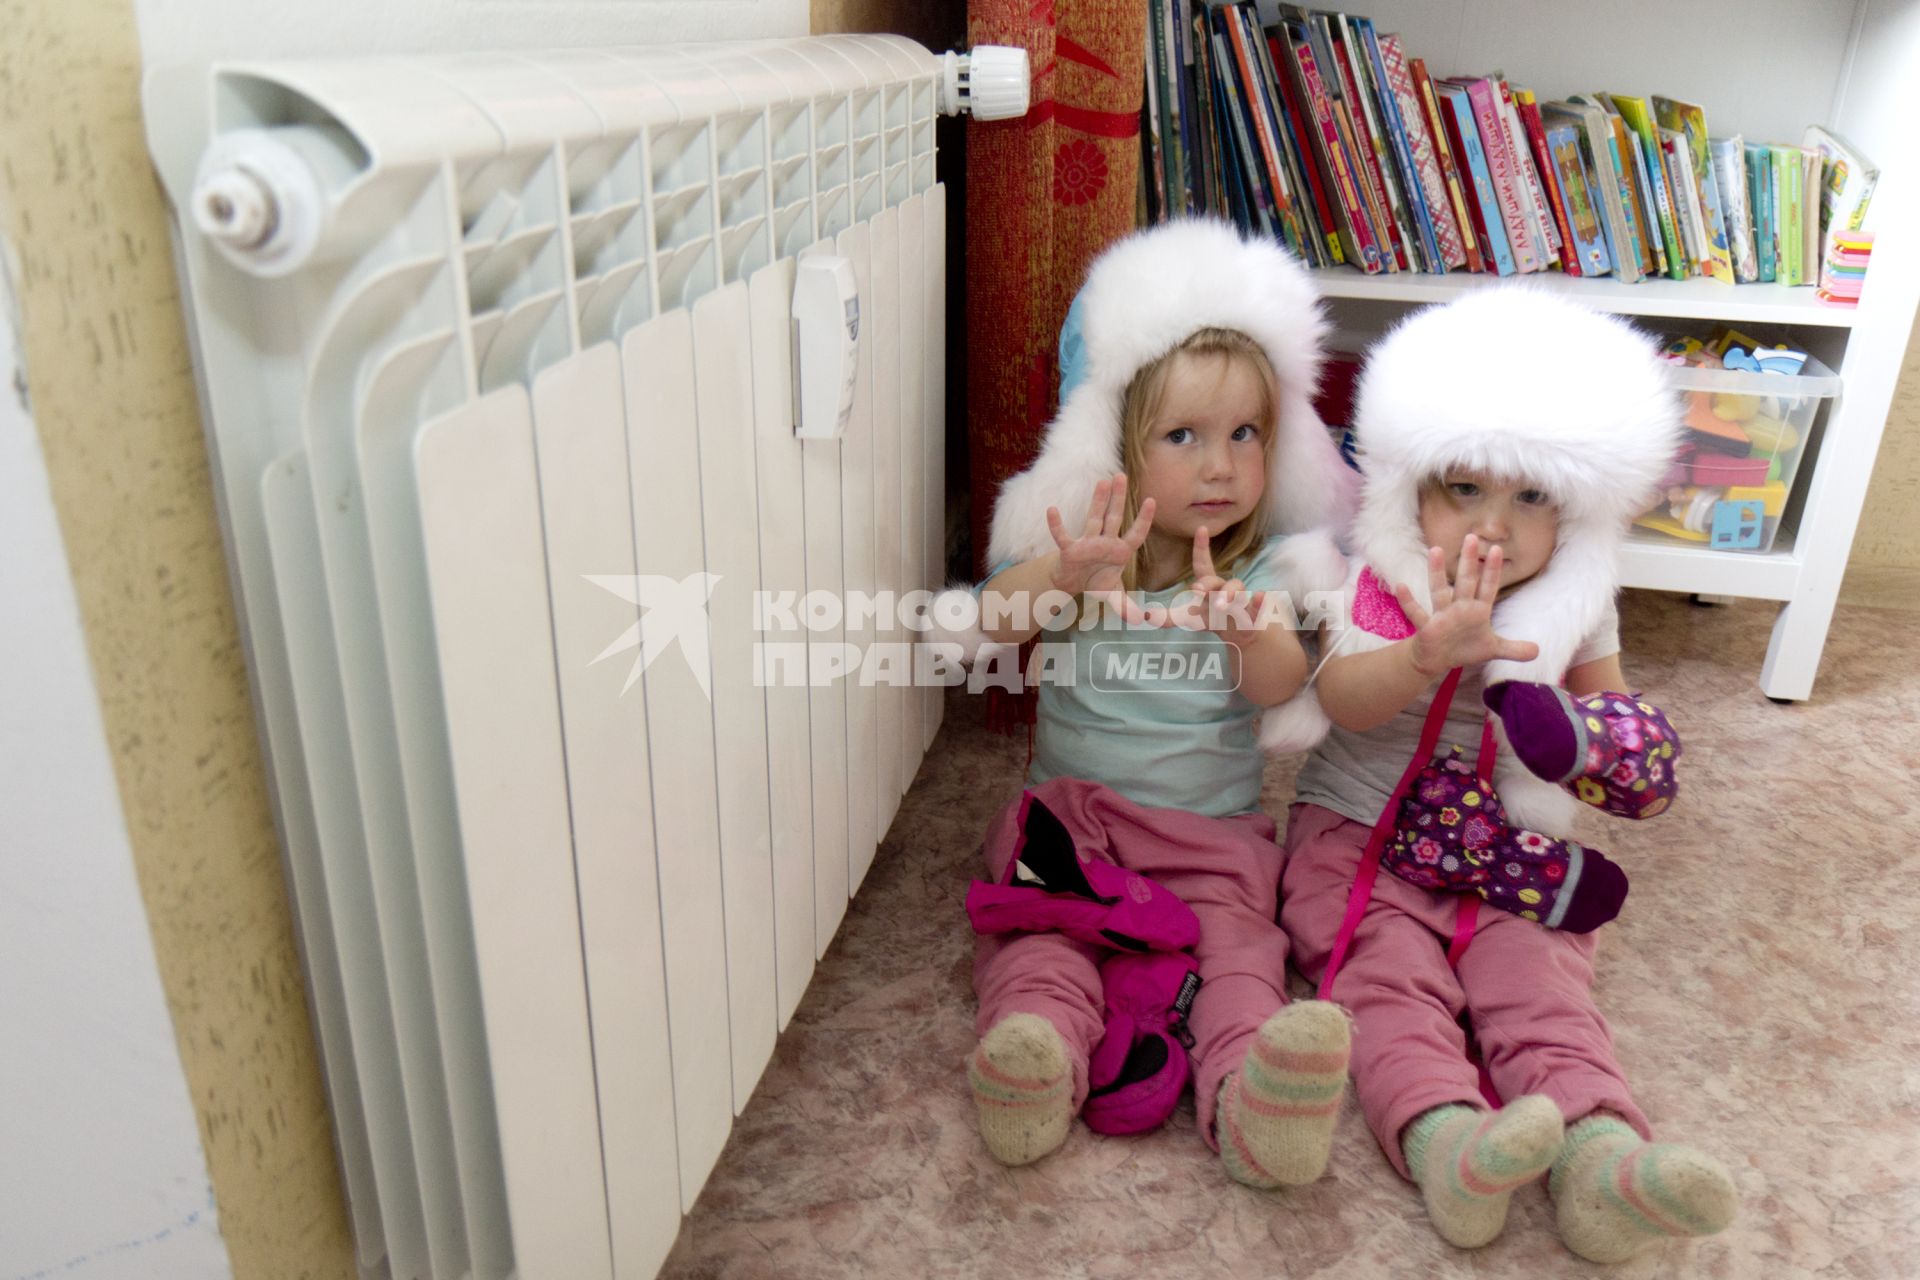 Иркутск. Девочки греются у батареи в холодной квартире.